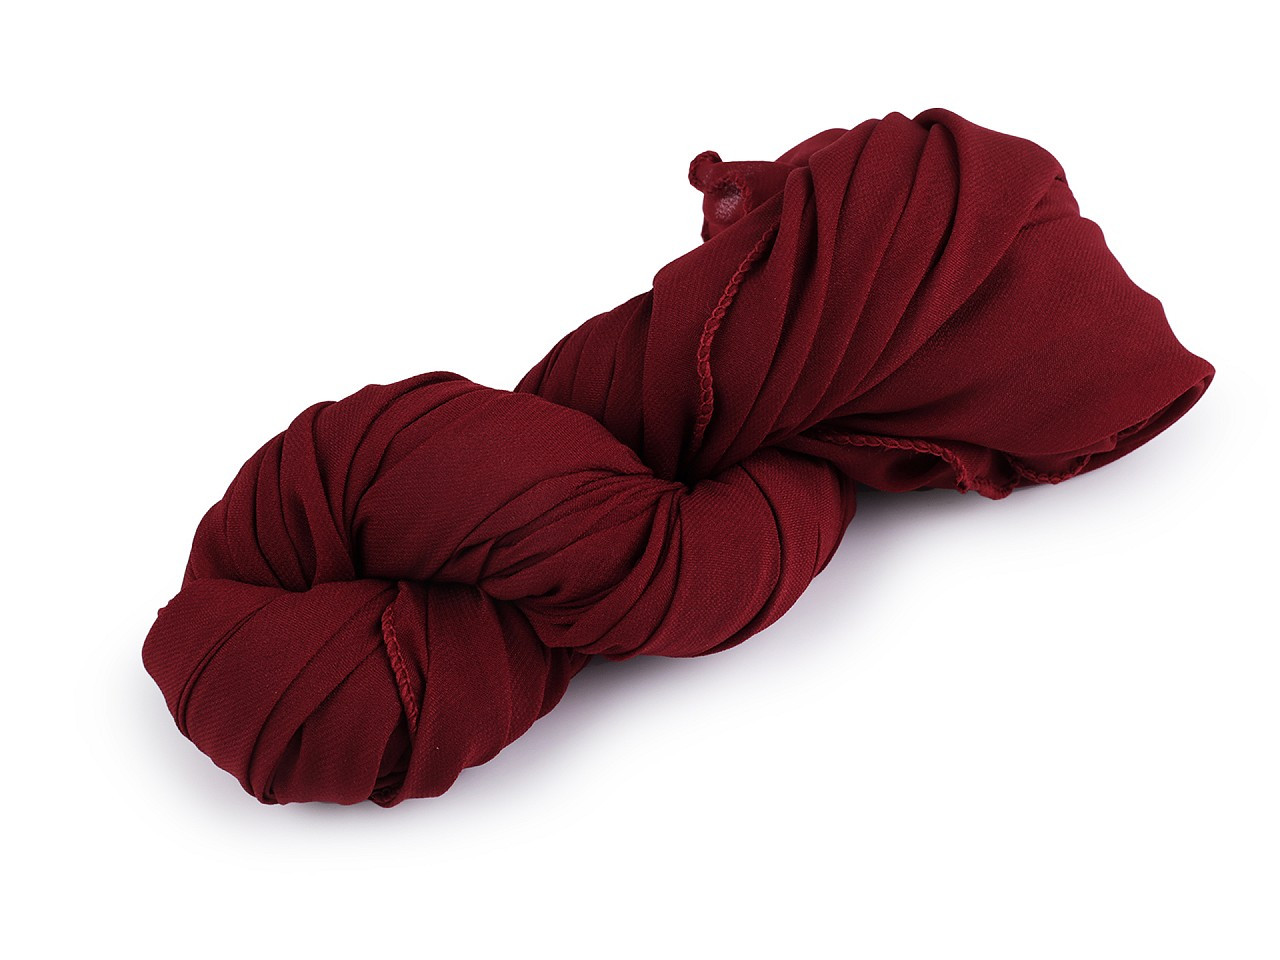 Letní šátek / šála jednobarevná 75x175 cm, barva 5 bordó sv.